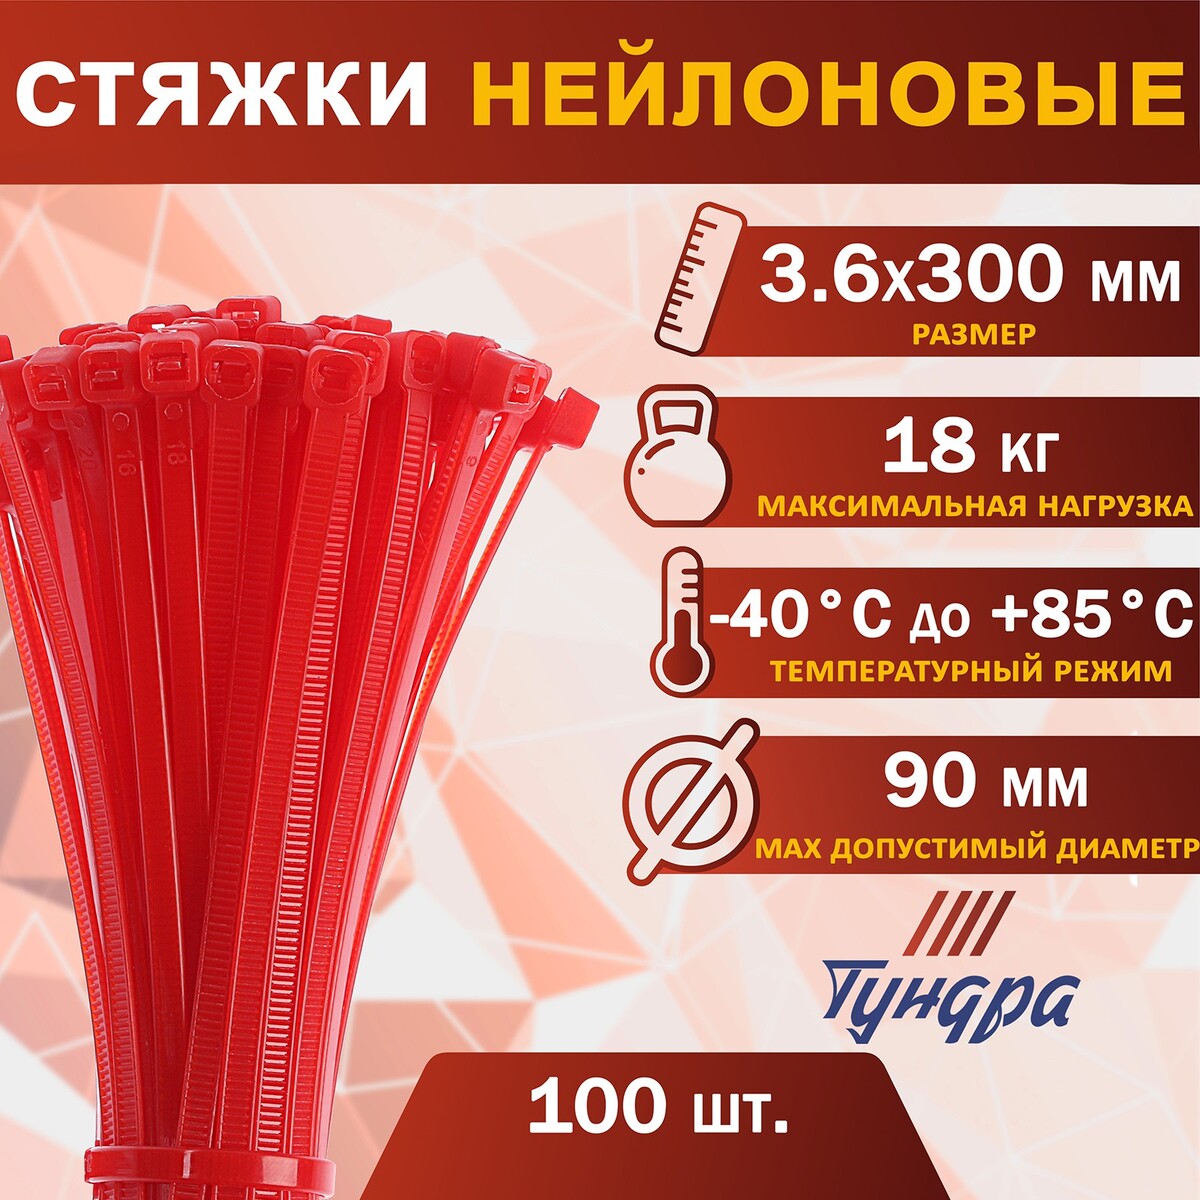 Хомут нейлоновый пластик тундра krep, для стяжки, 3.6х300 мм, цвет красный, в уп. 100 шт хомут нейлоновый пластик 3 6х300 мм белые в упаковке 100 шт